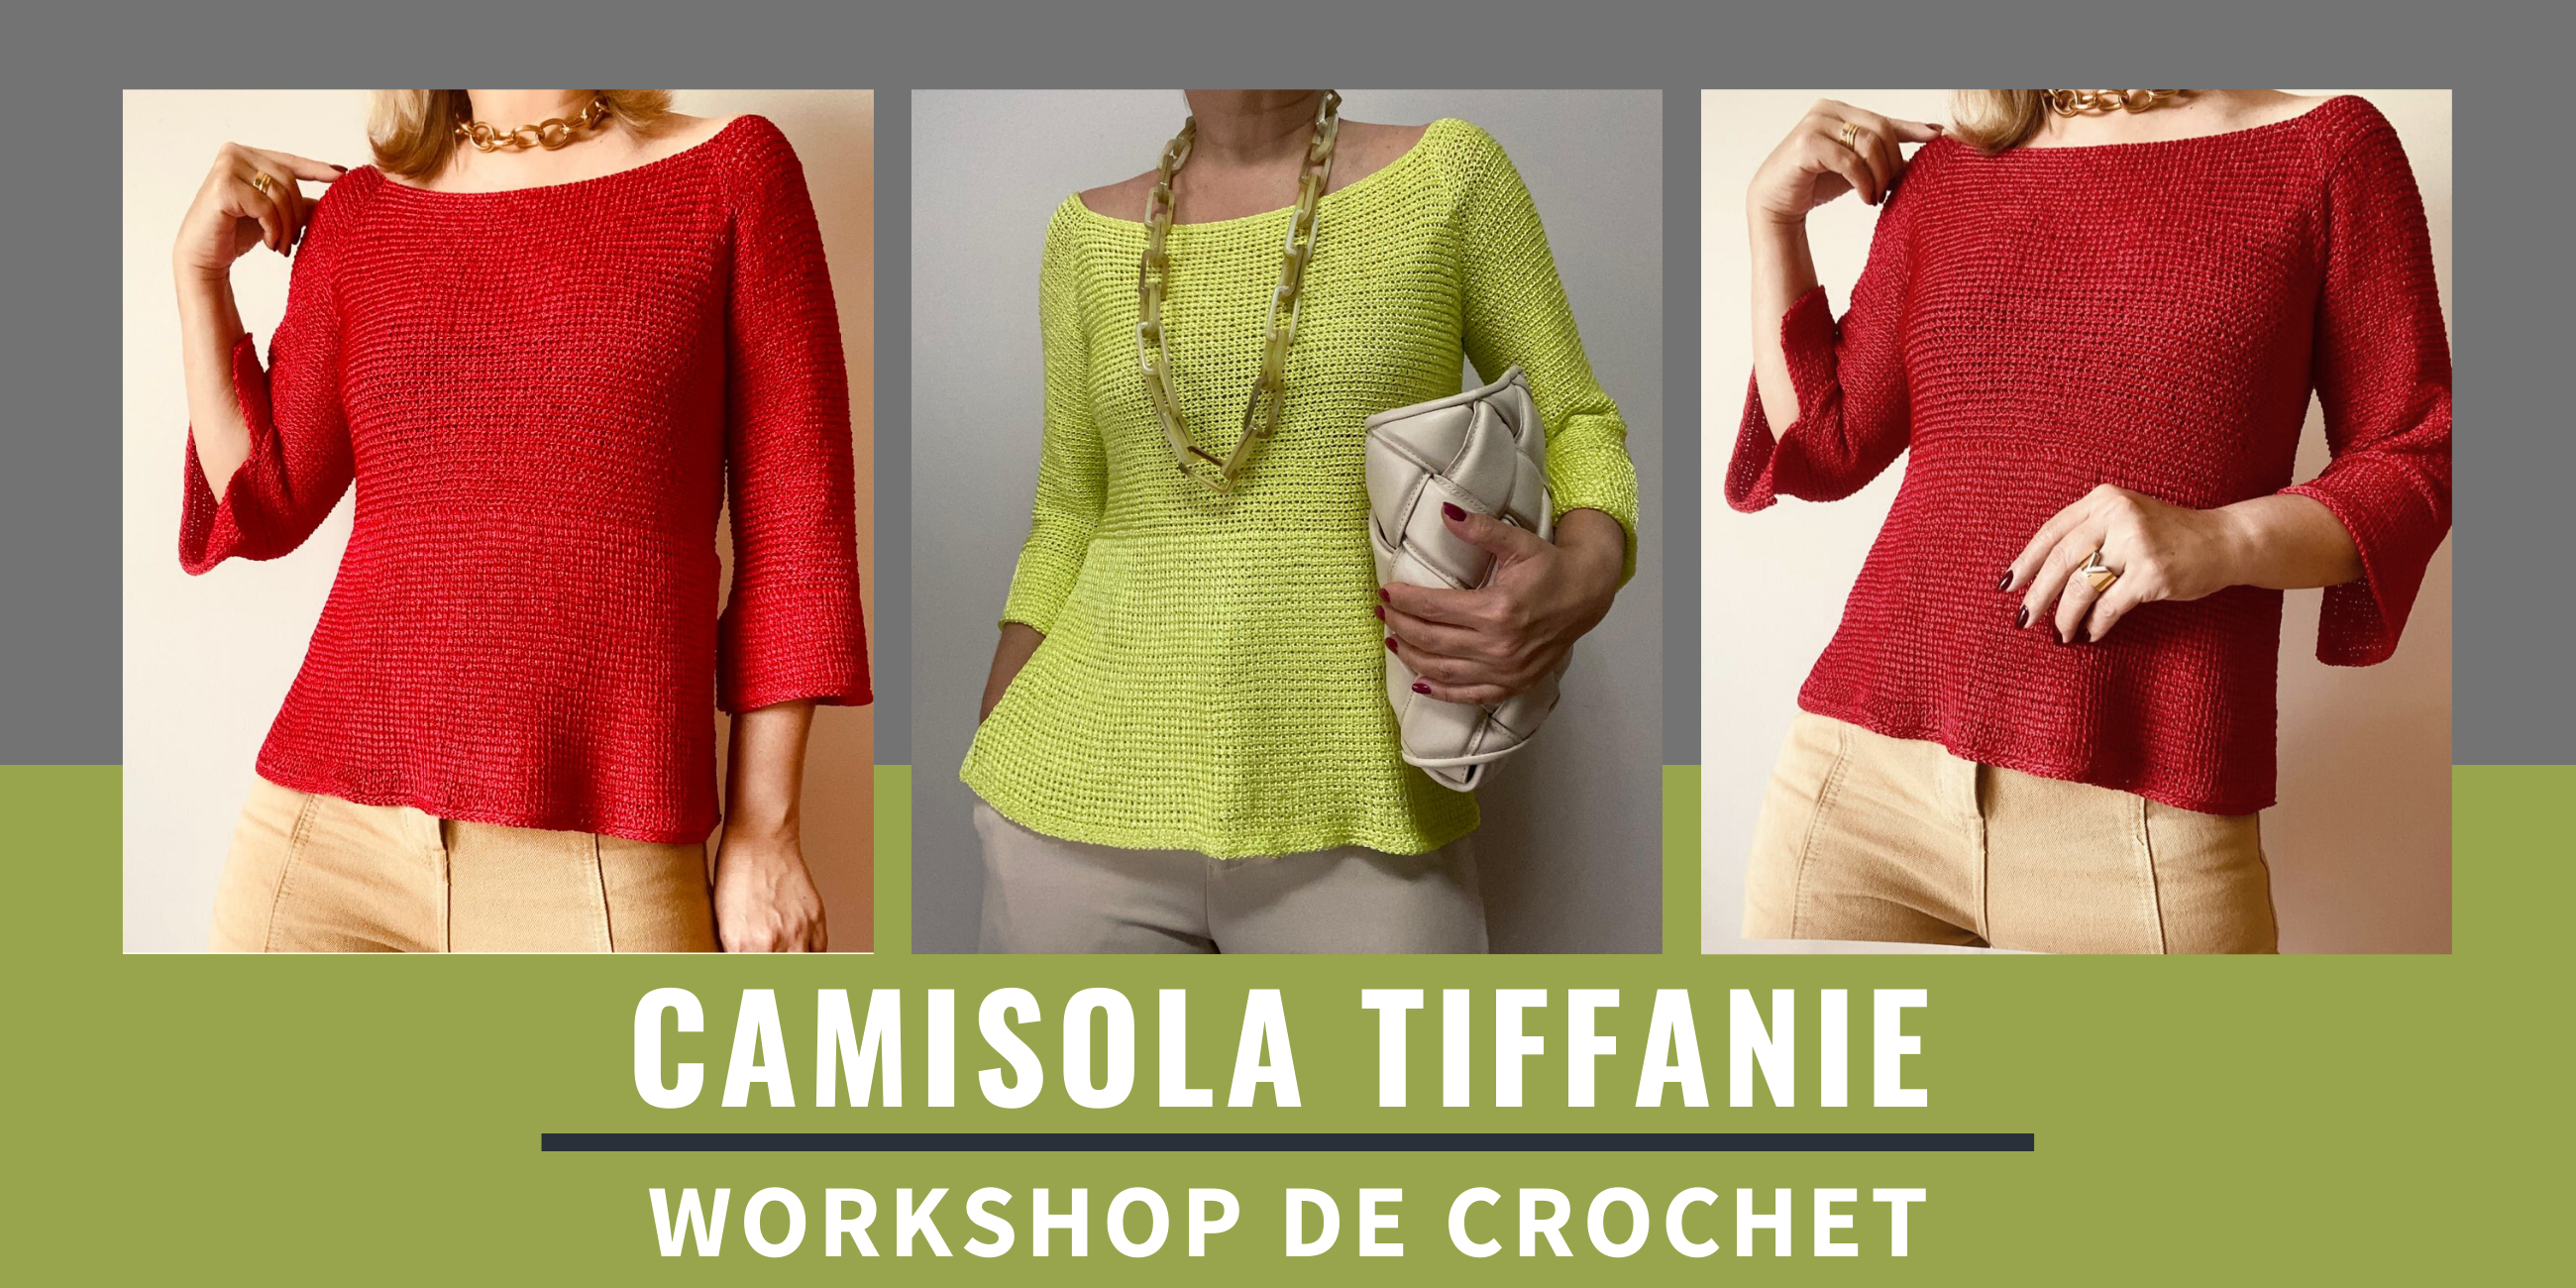 Capa-Páginas-7 Workshop de Crochet - Camisola Tiffanie